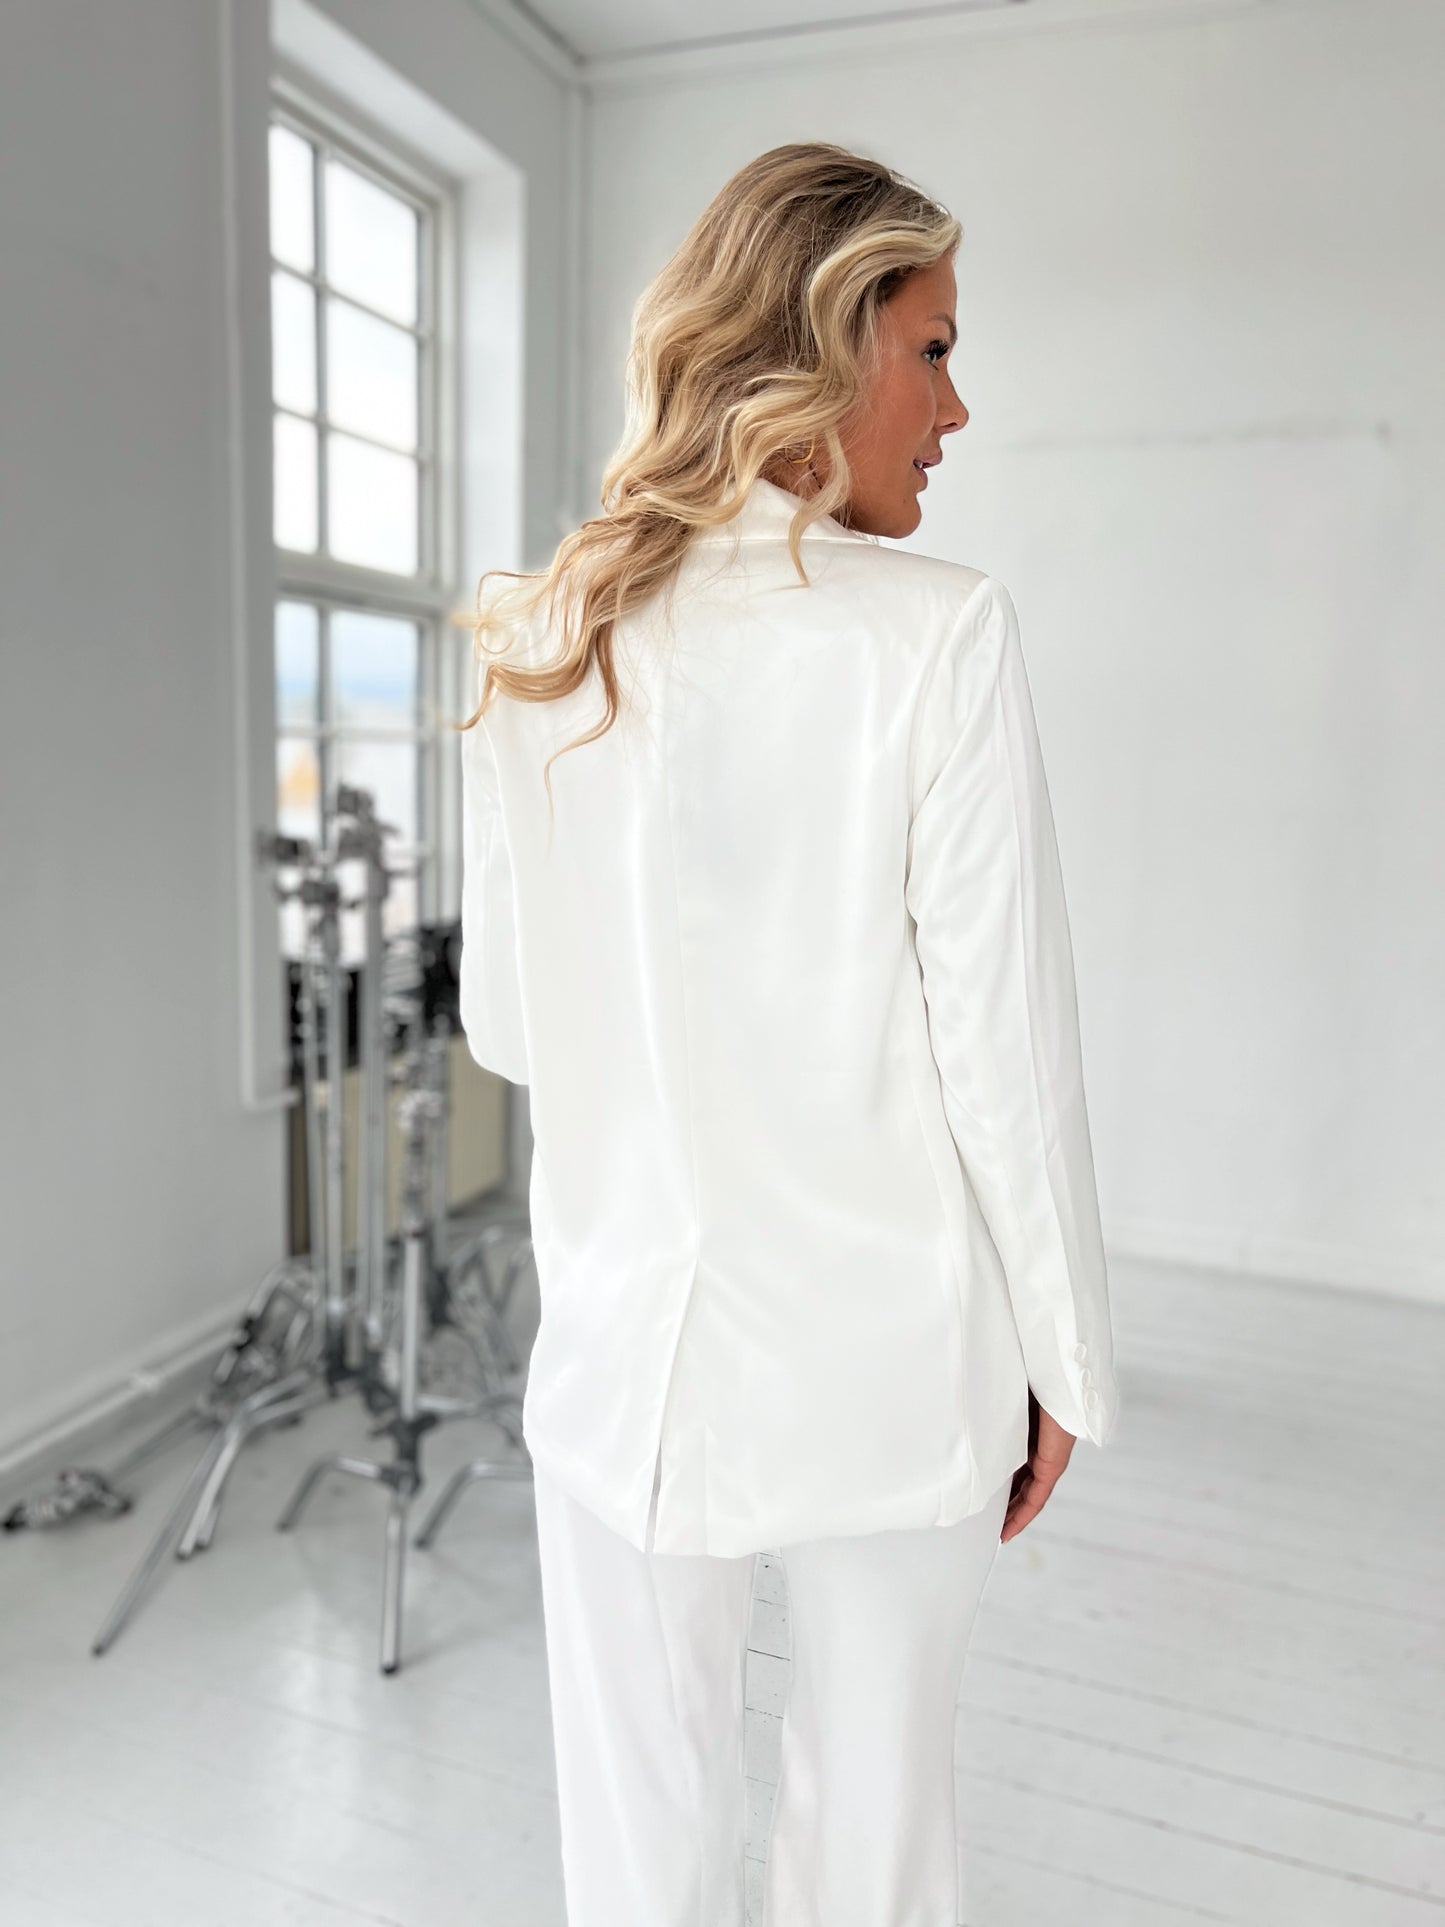 Model i Choklate hvid satin blazer (2305) fra webshoppen Aaberg Copenhagen